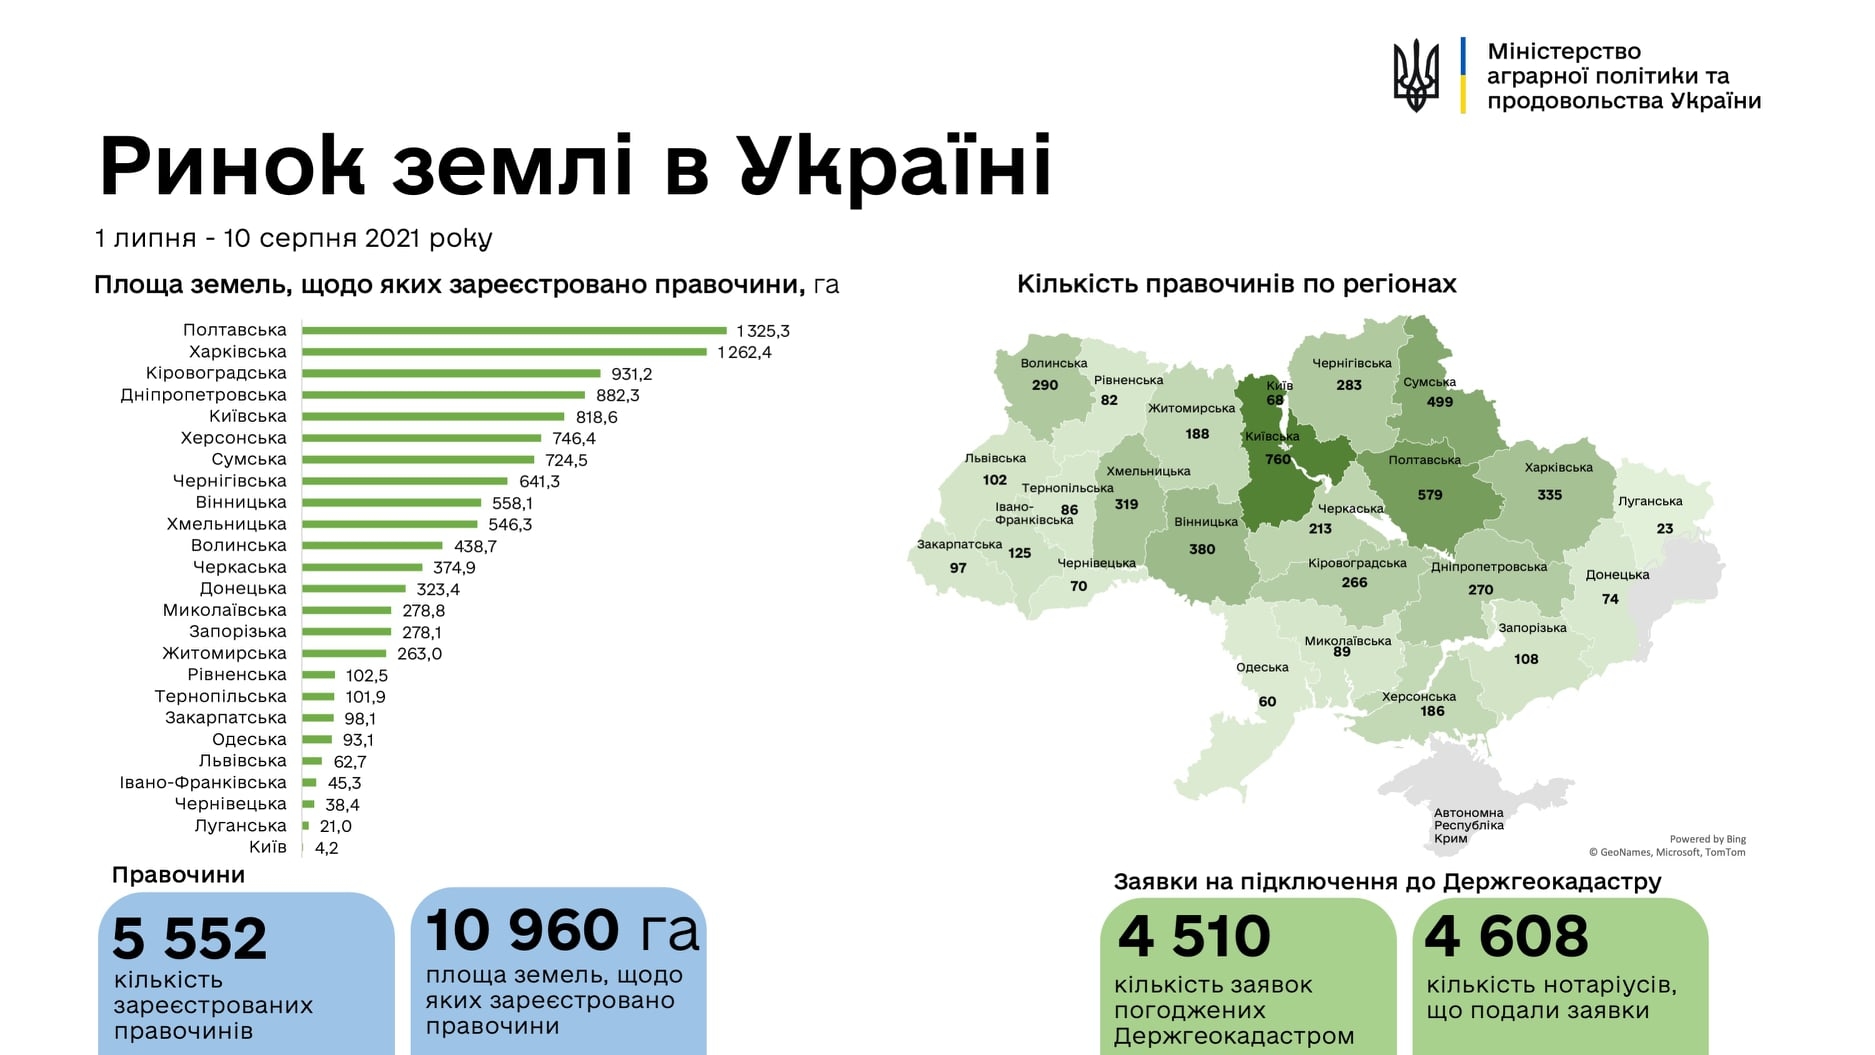 Вінницька область у ТОП-10 за кількістю укладених земельних угод 